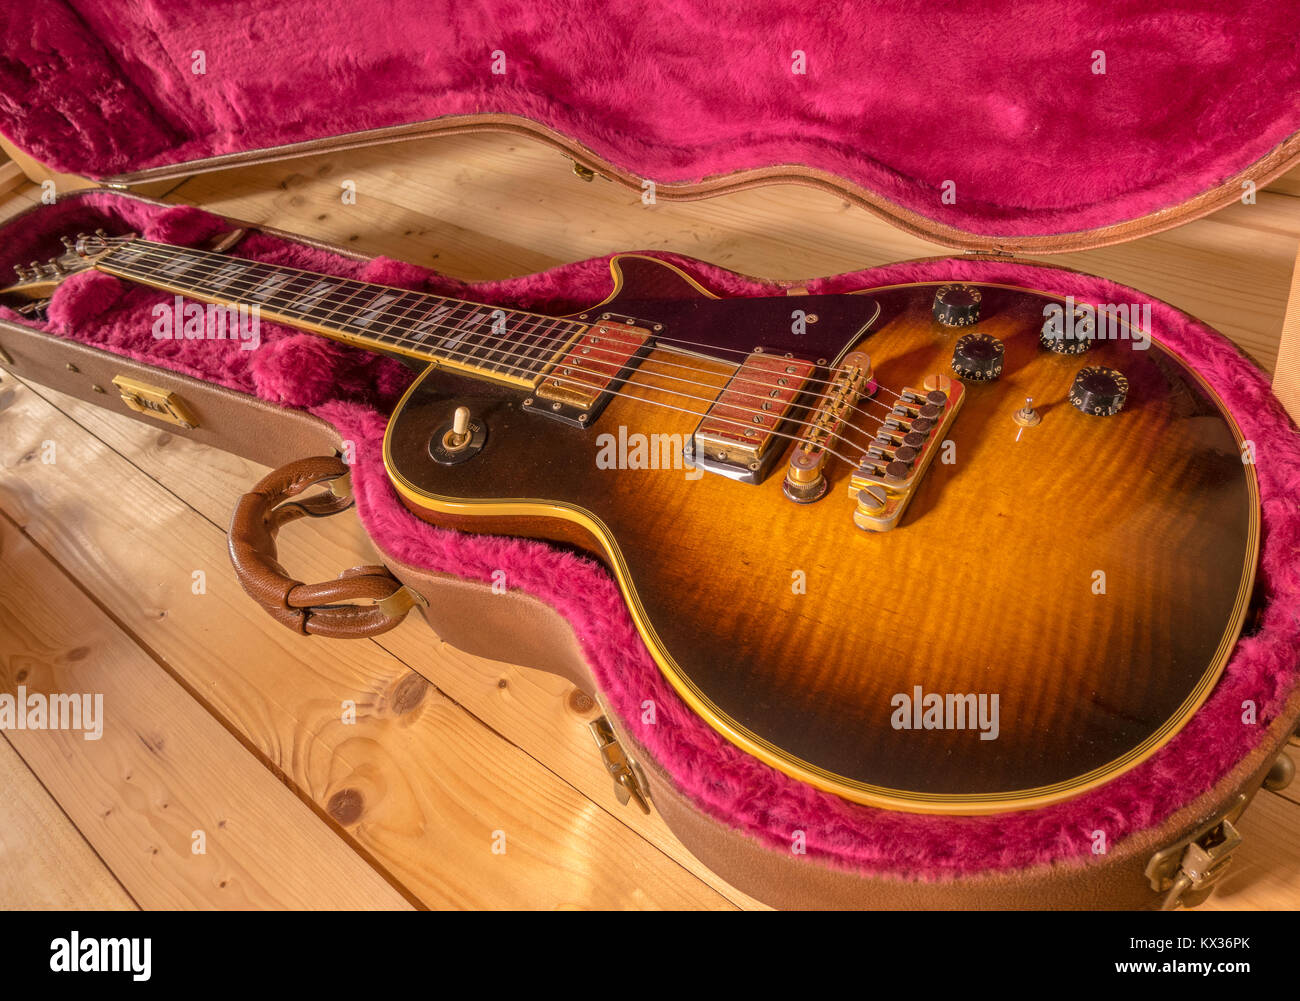 Gibson Les Paul vintage guitare électrique, en forme de mallette rigide. Bordée doux Modèle antique sunburst 25/50 anniversaire, made in USA, fabriqués en 1978. Banque D'Images